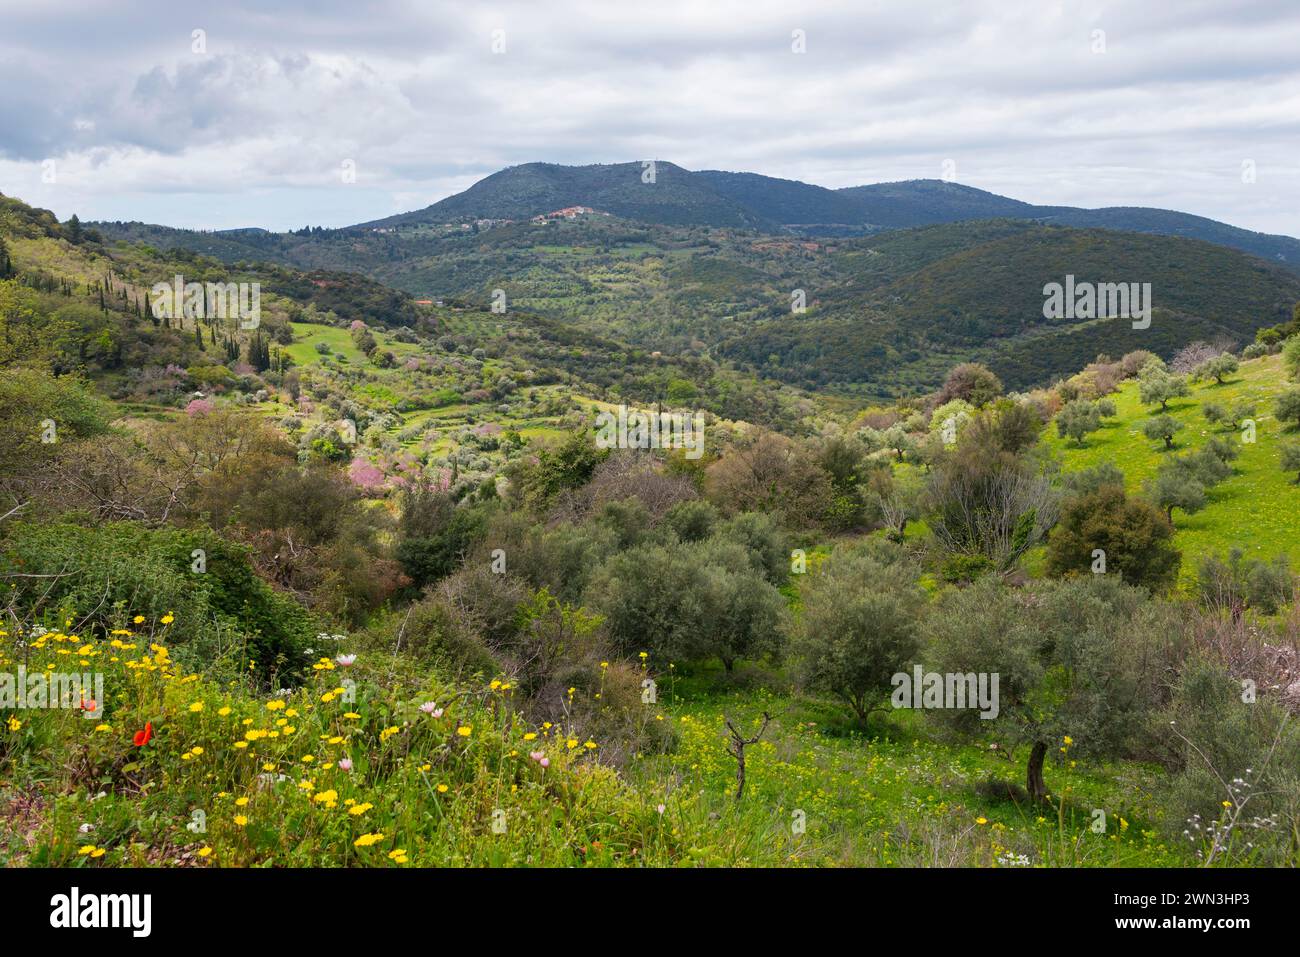 Blick auf eine friedliche, üppige grüne Landschaft mit Bergen und bewölktem Himmel im Hintergrund, in der Nähe von Platanien, Peloponnes, Griechenland Stockfoto